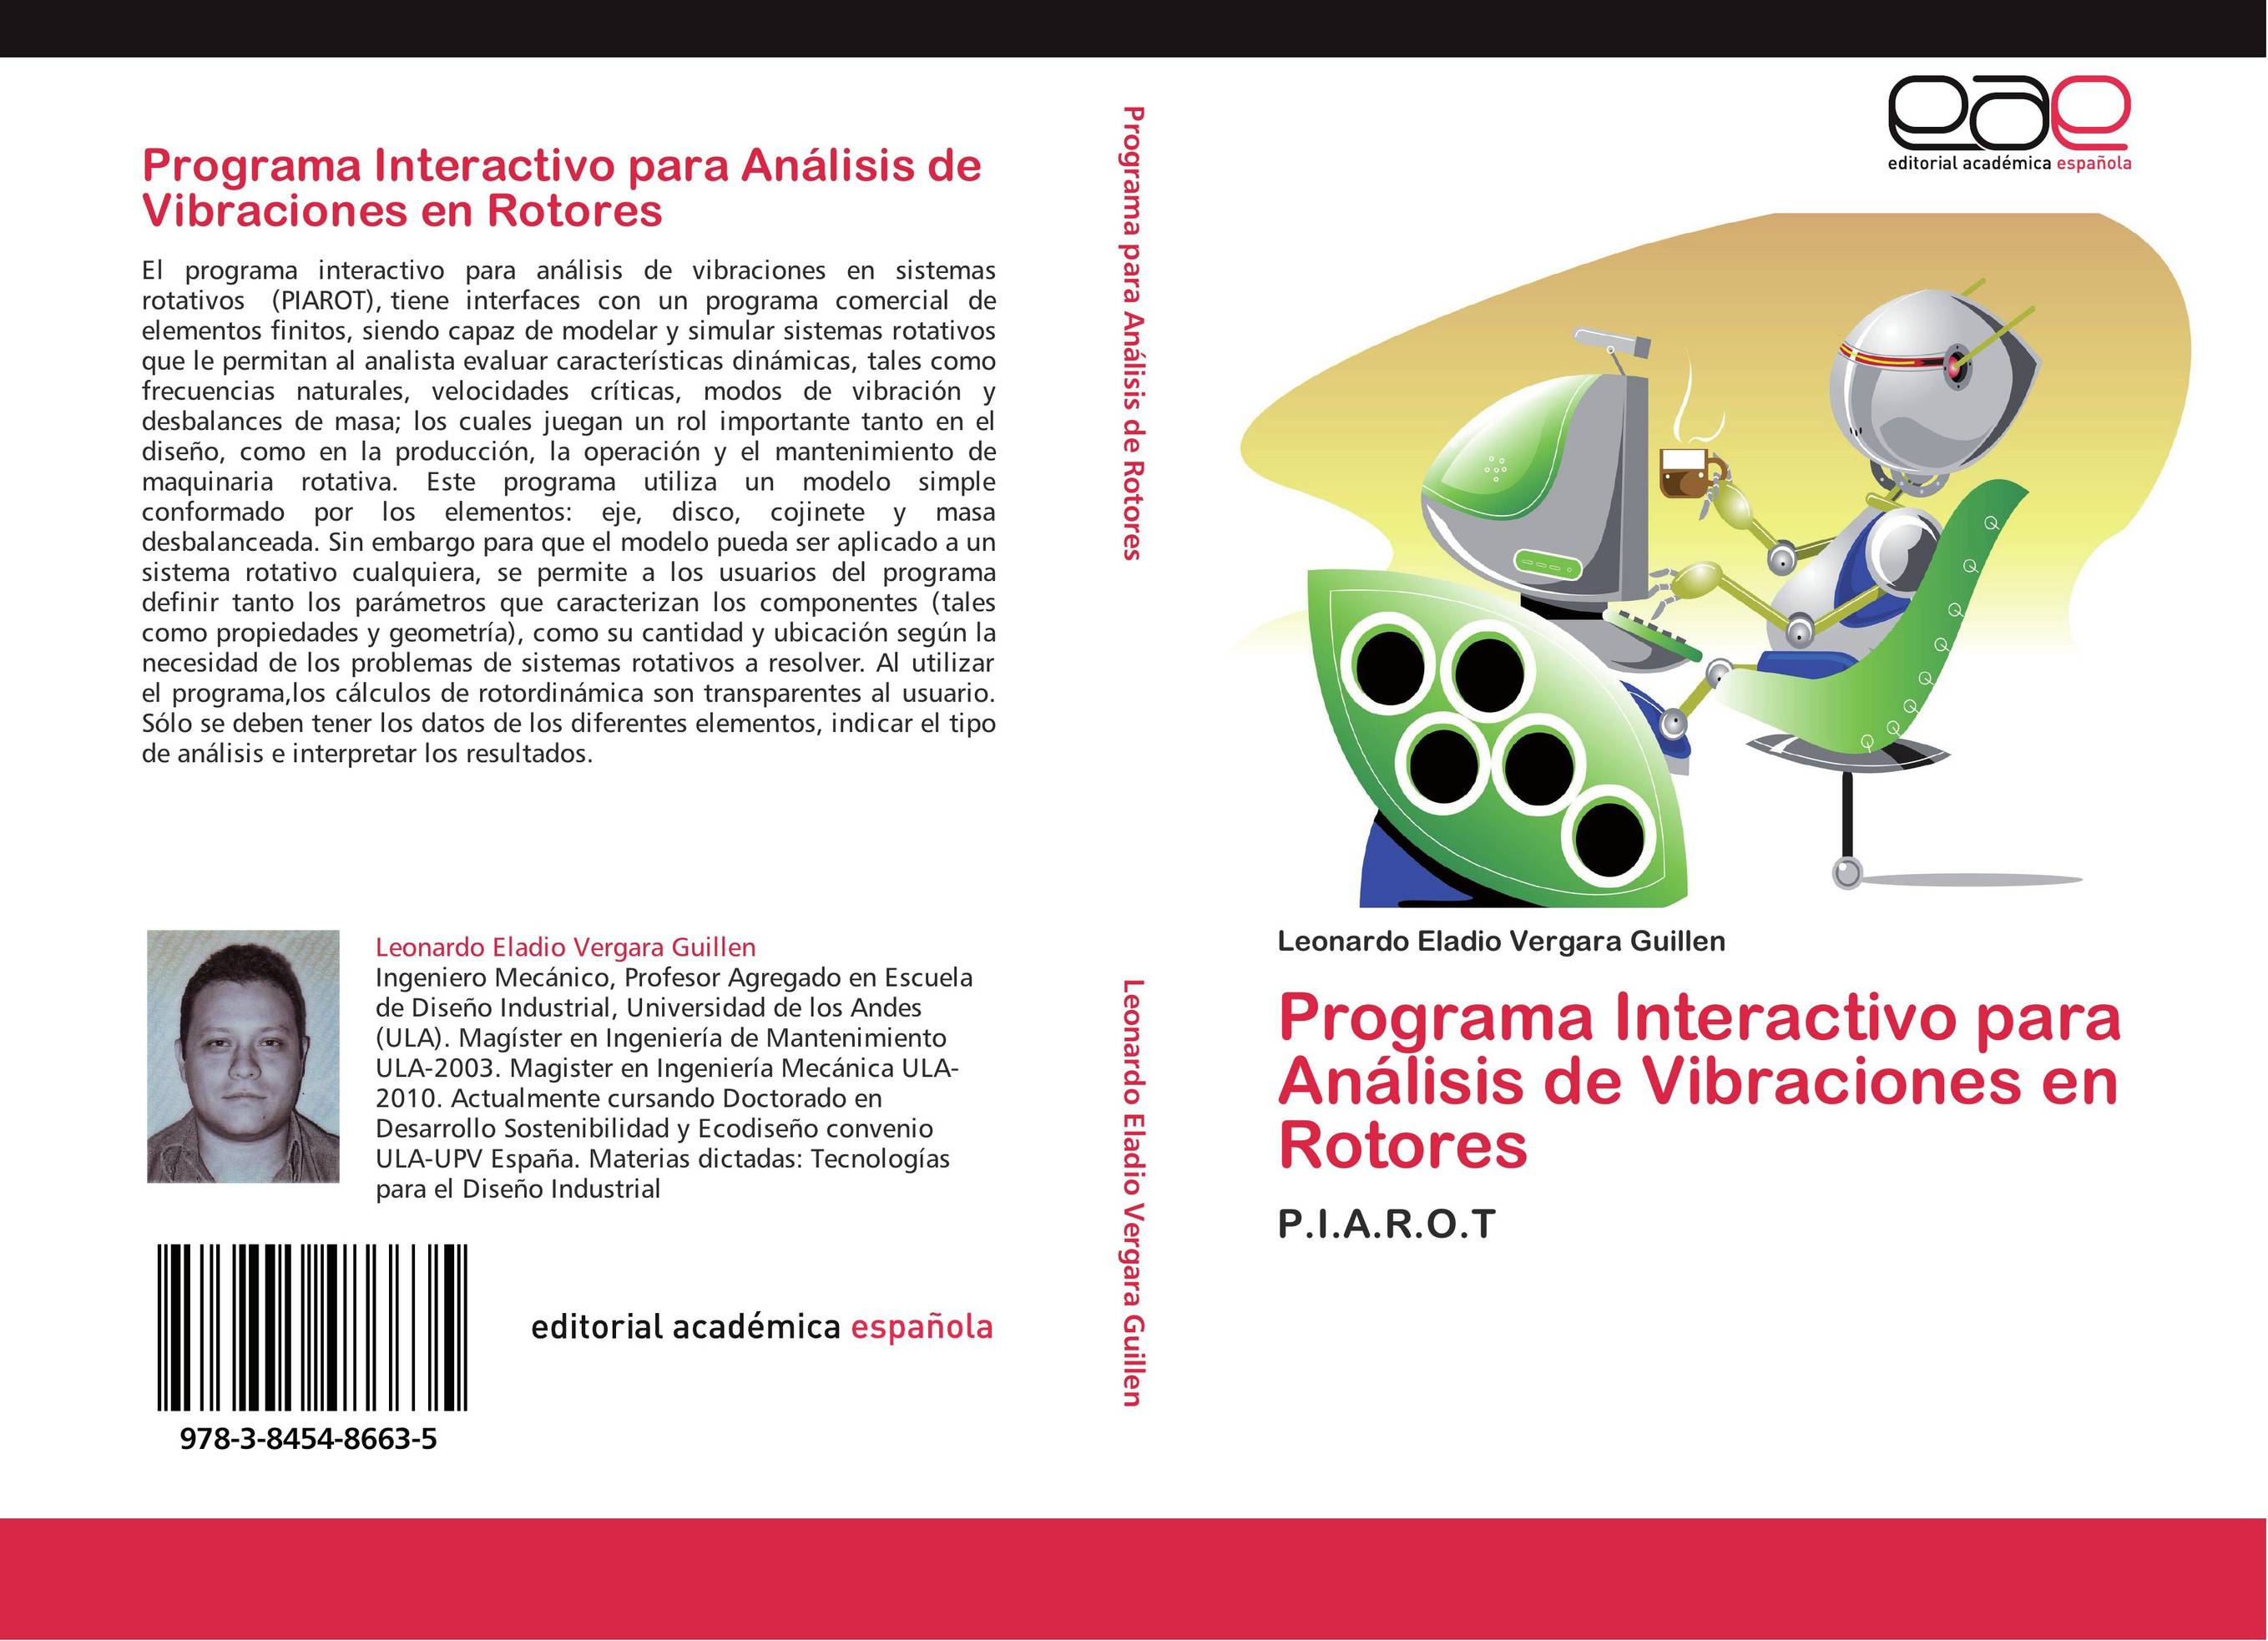 Programa Interactivo para Análisis de Vibraciones en Rotores